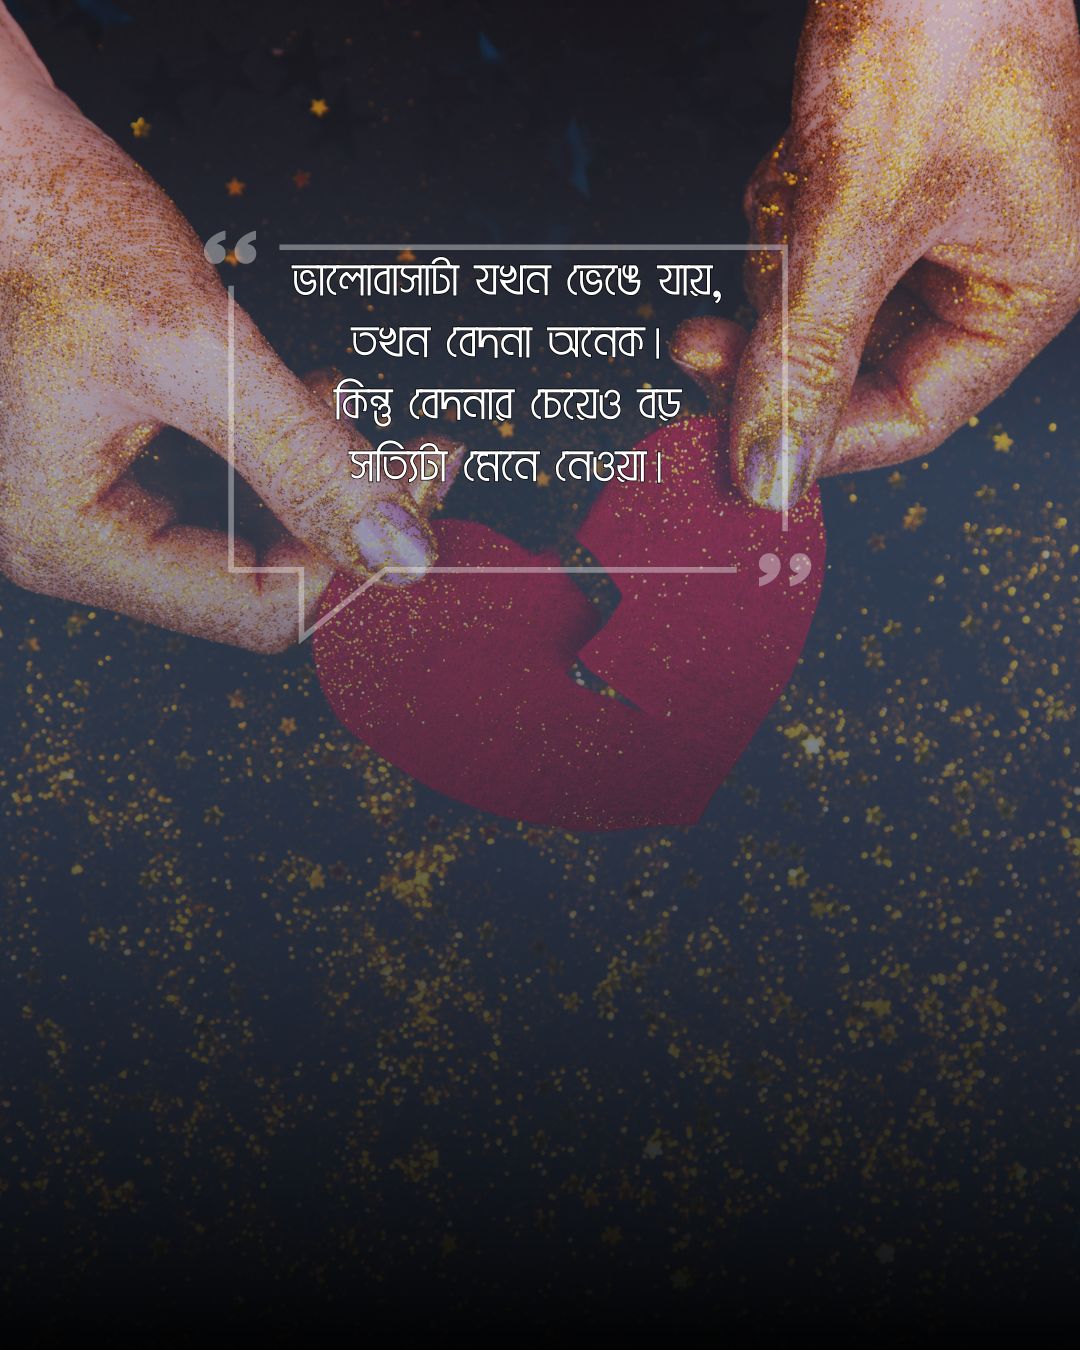 ব্রেকআপ সাইরি বাংলা (breakup shayari bengali)ছবি 2 (1)